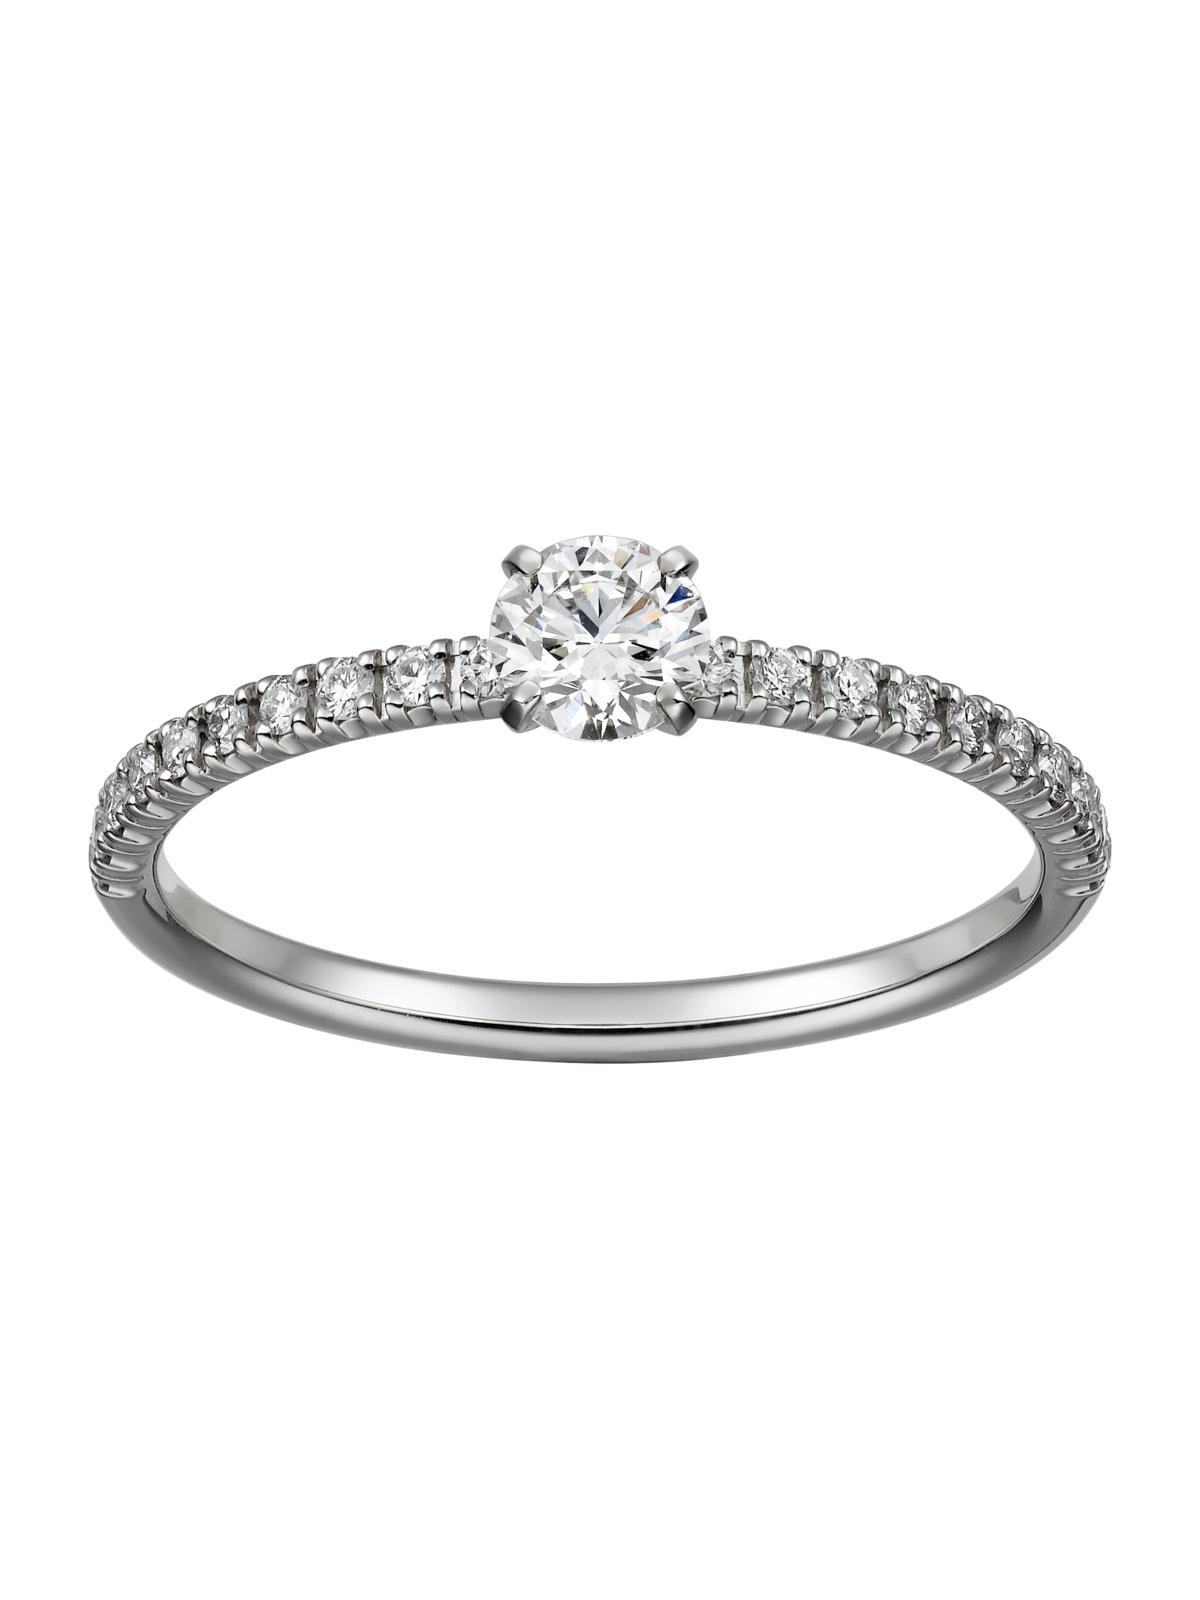 anillo de compromiso solitario con diamantes pequeños en el contorno y diamante central